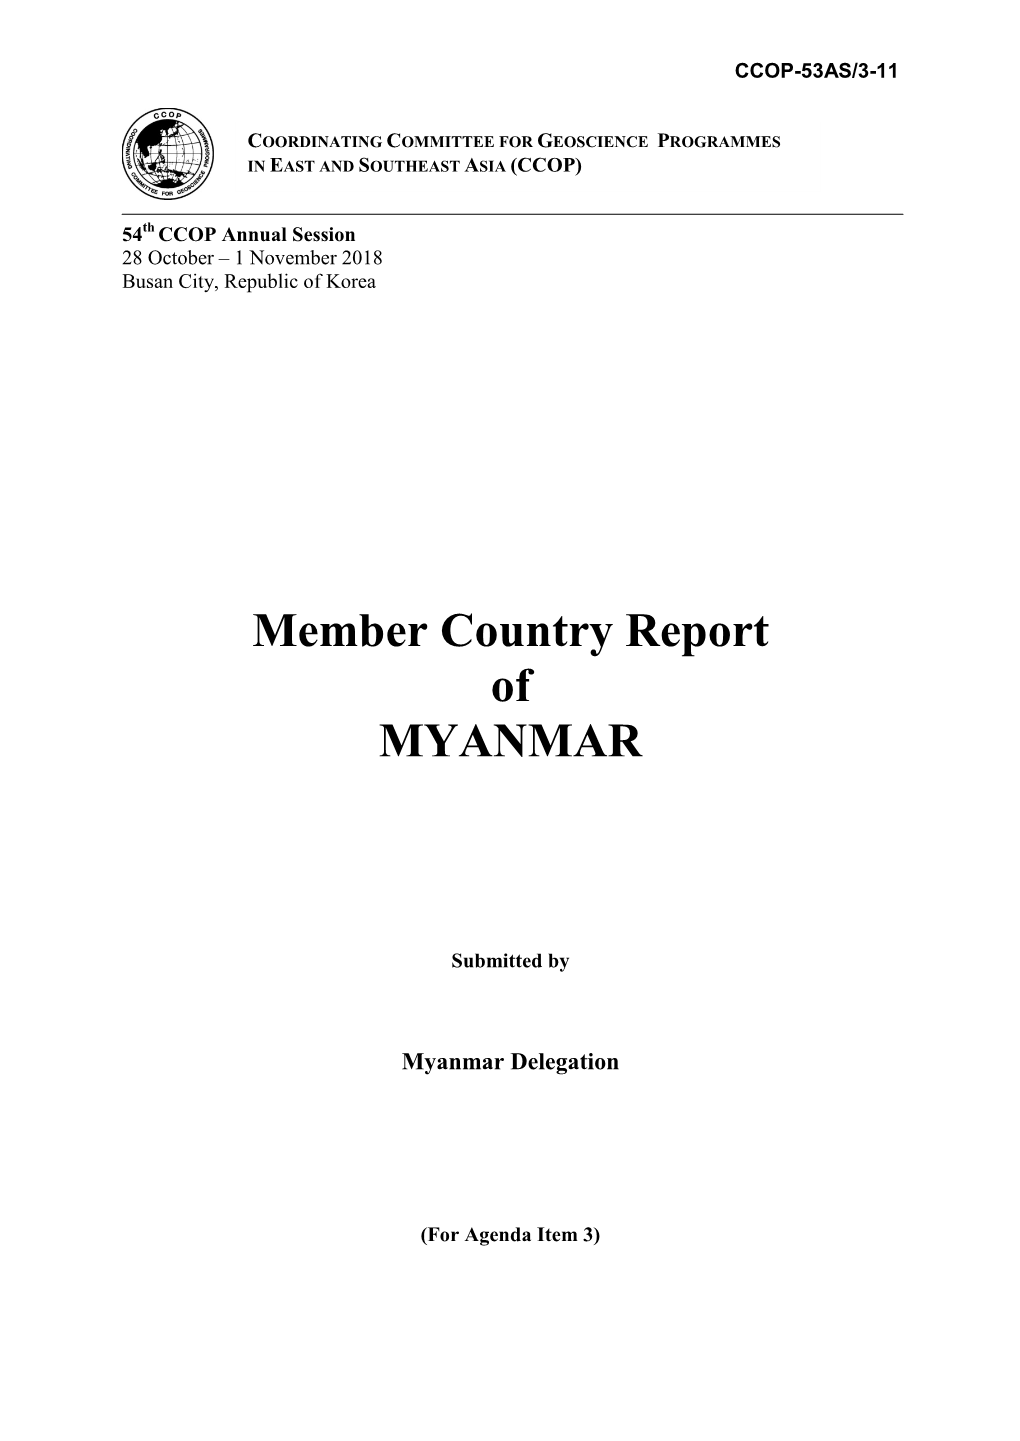 Myanmar Member Country Report